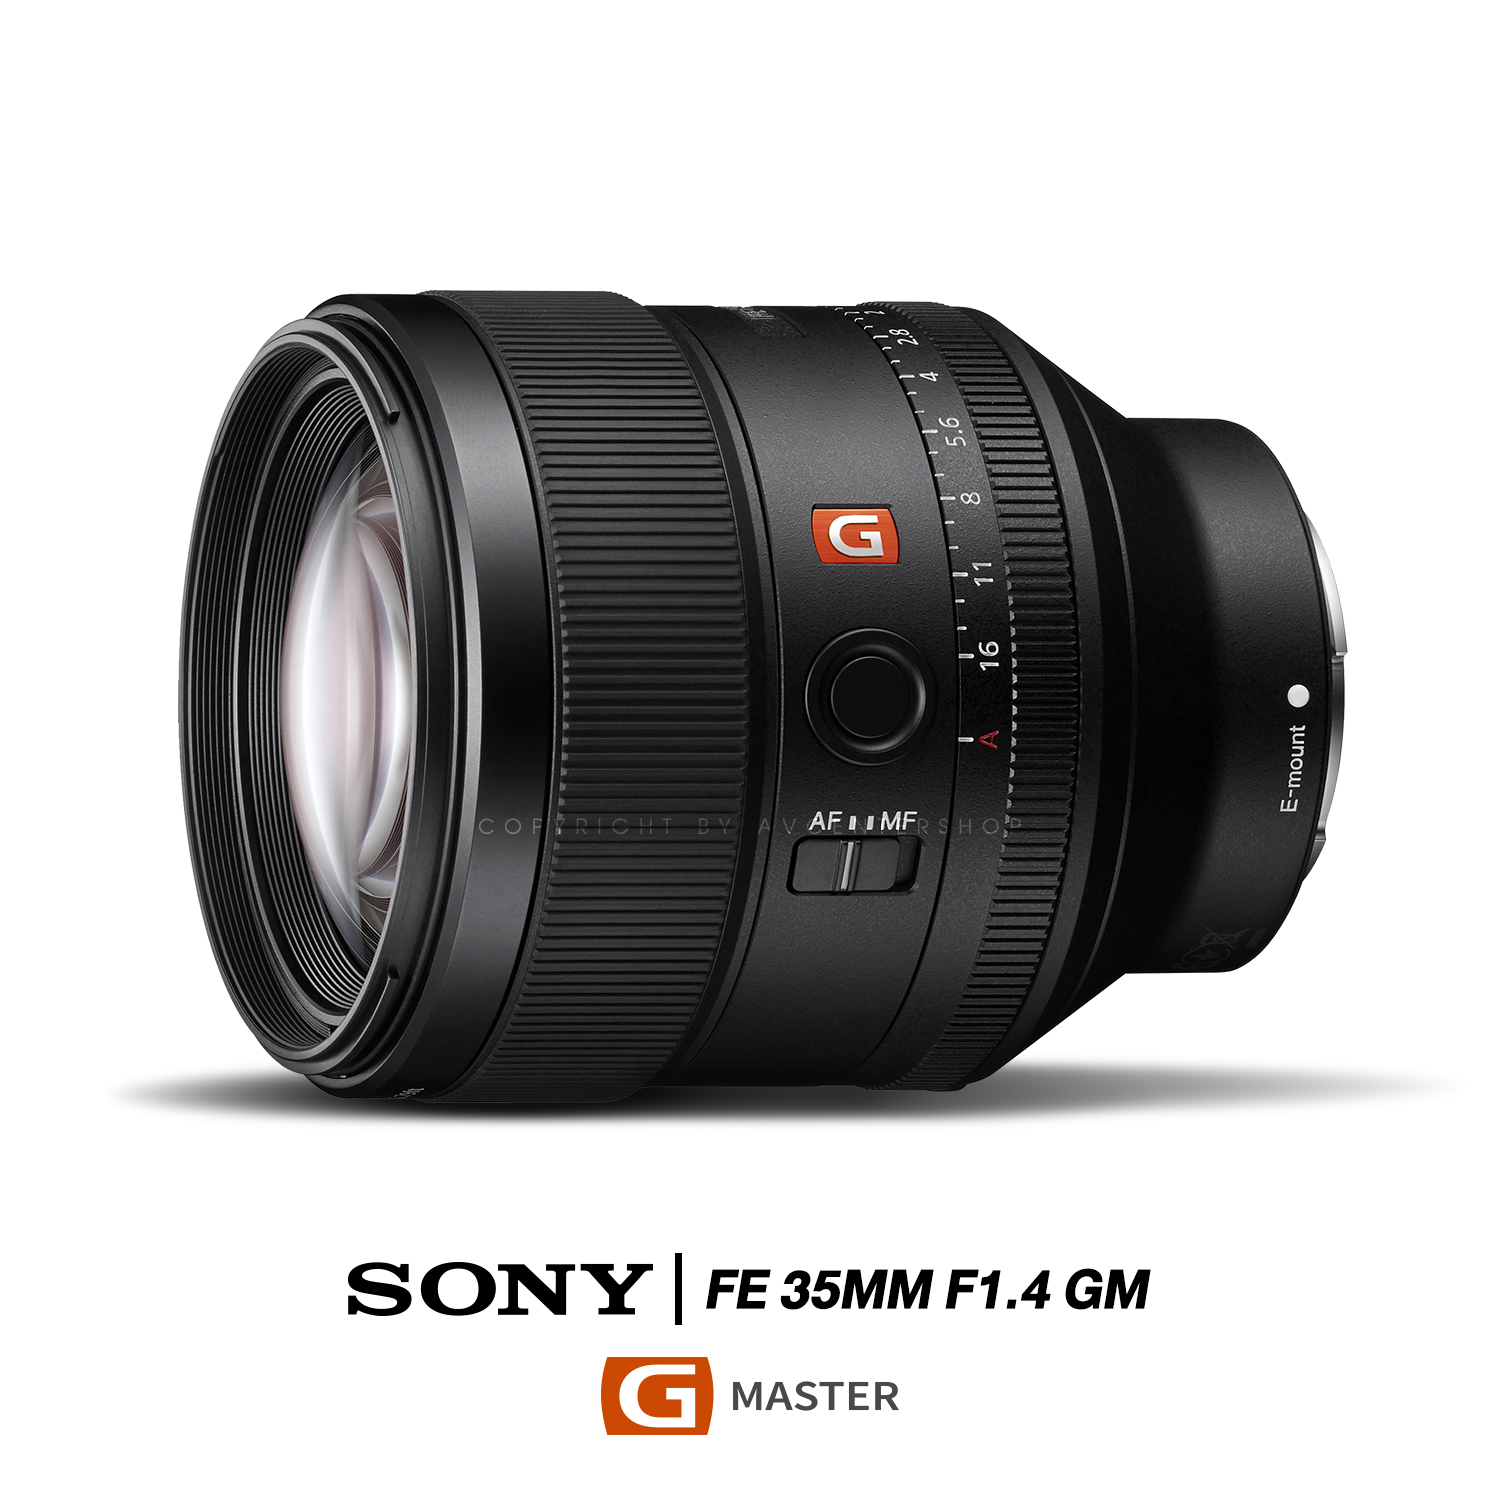 Sony Lens FE 35 mm f1.4 GM